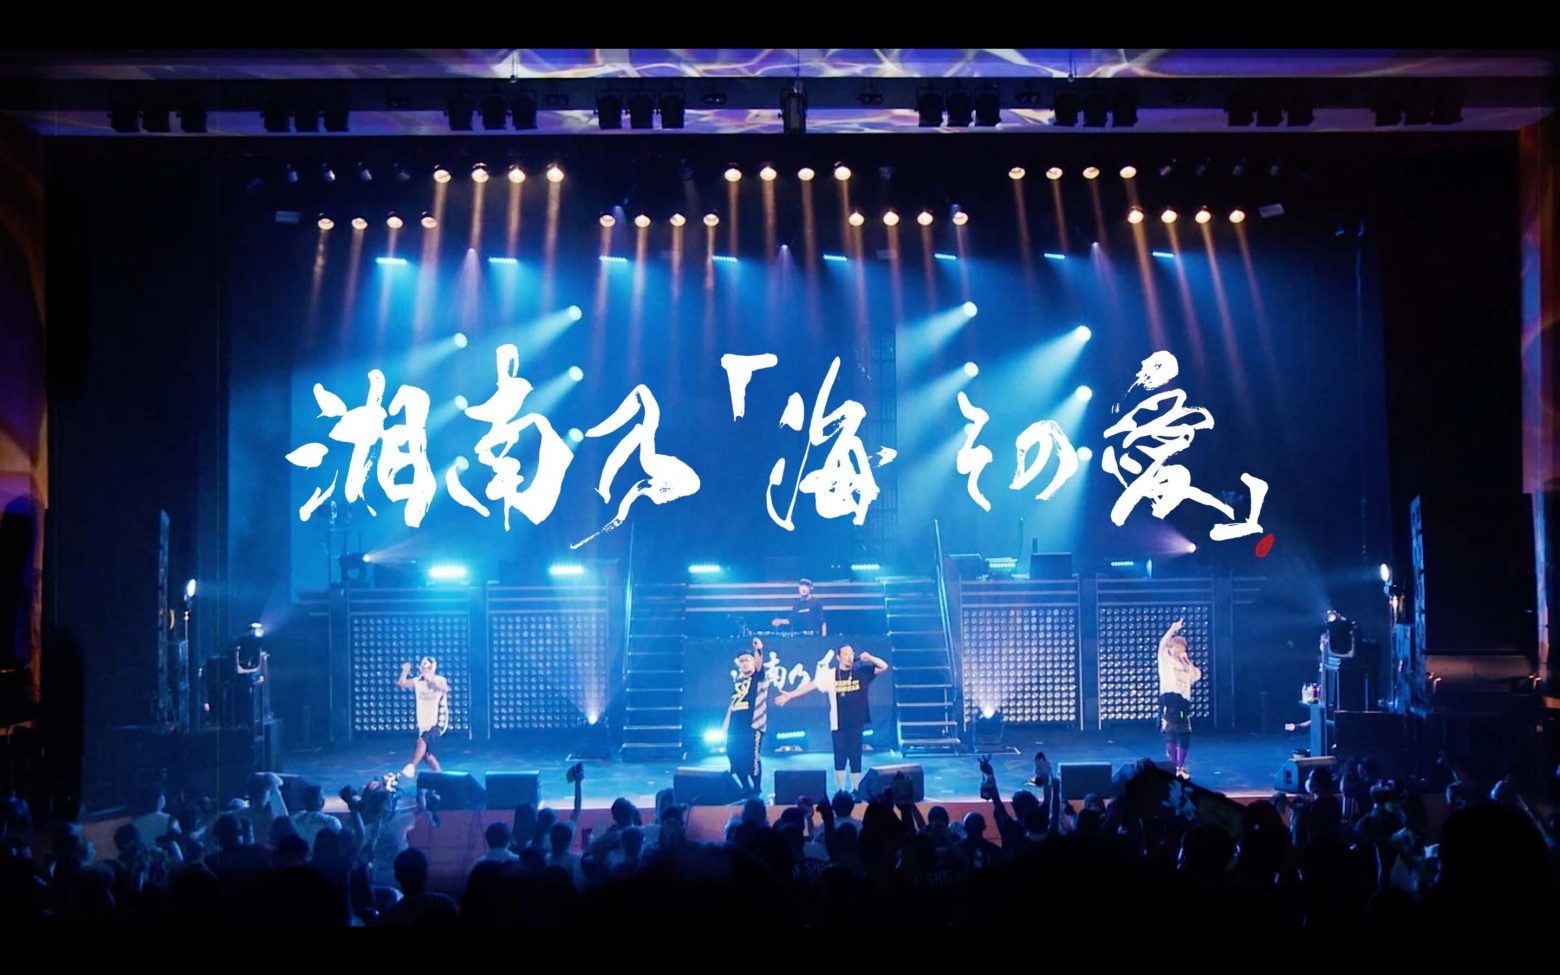 湘南乃風 ツアーで初披露した新曲 湘南乃 海 その愛 のライブリリックビデオ公開 今ツアー映像も初出し Musicman